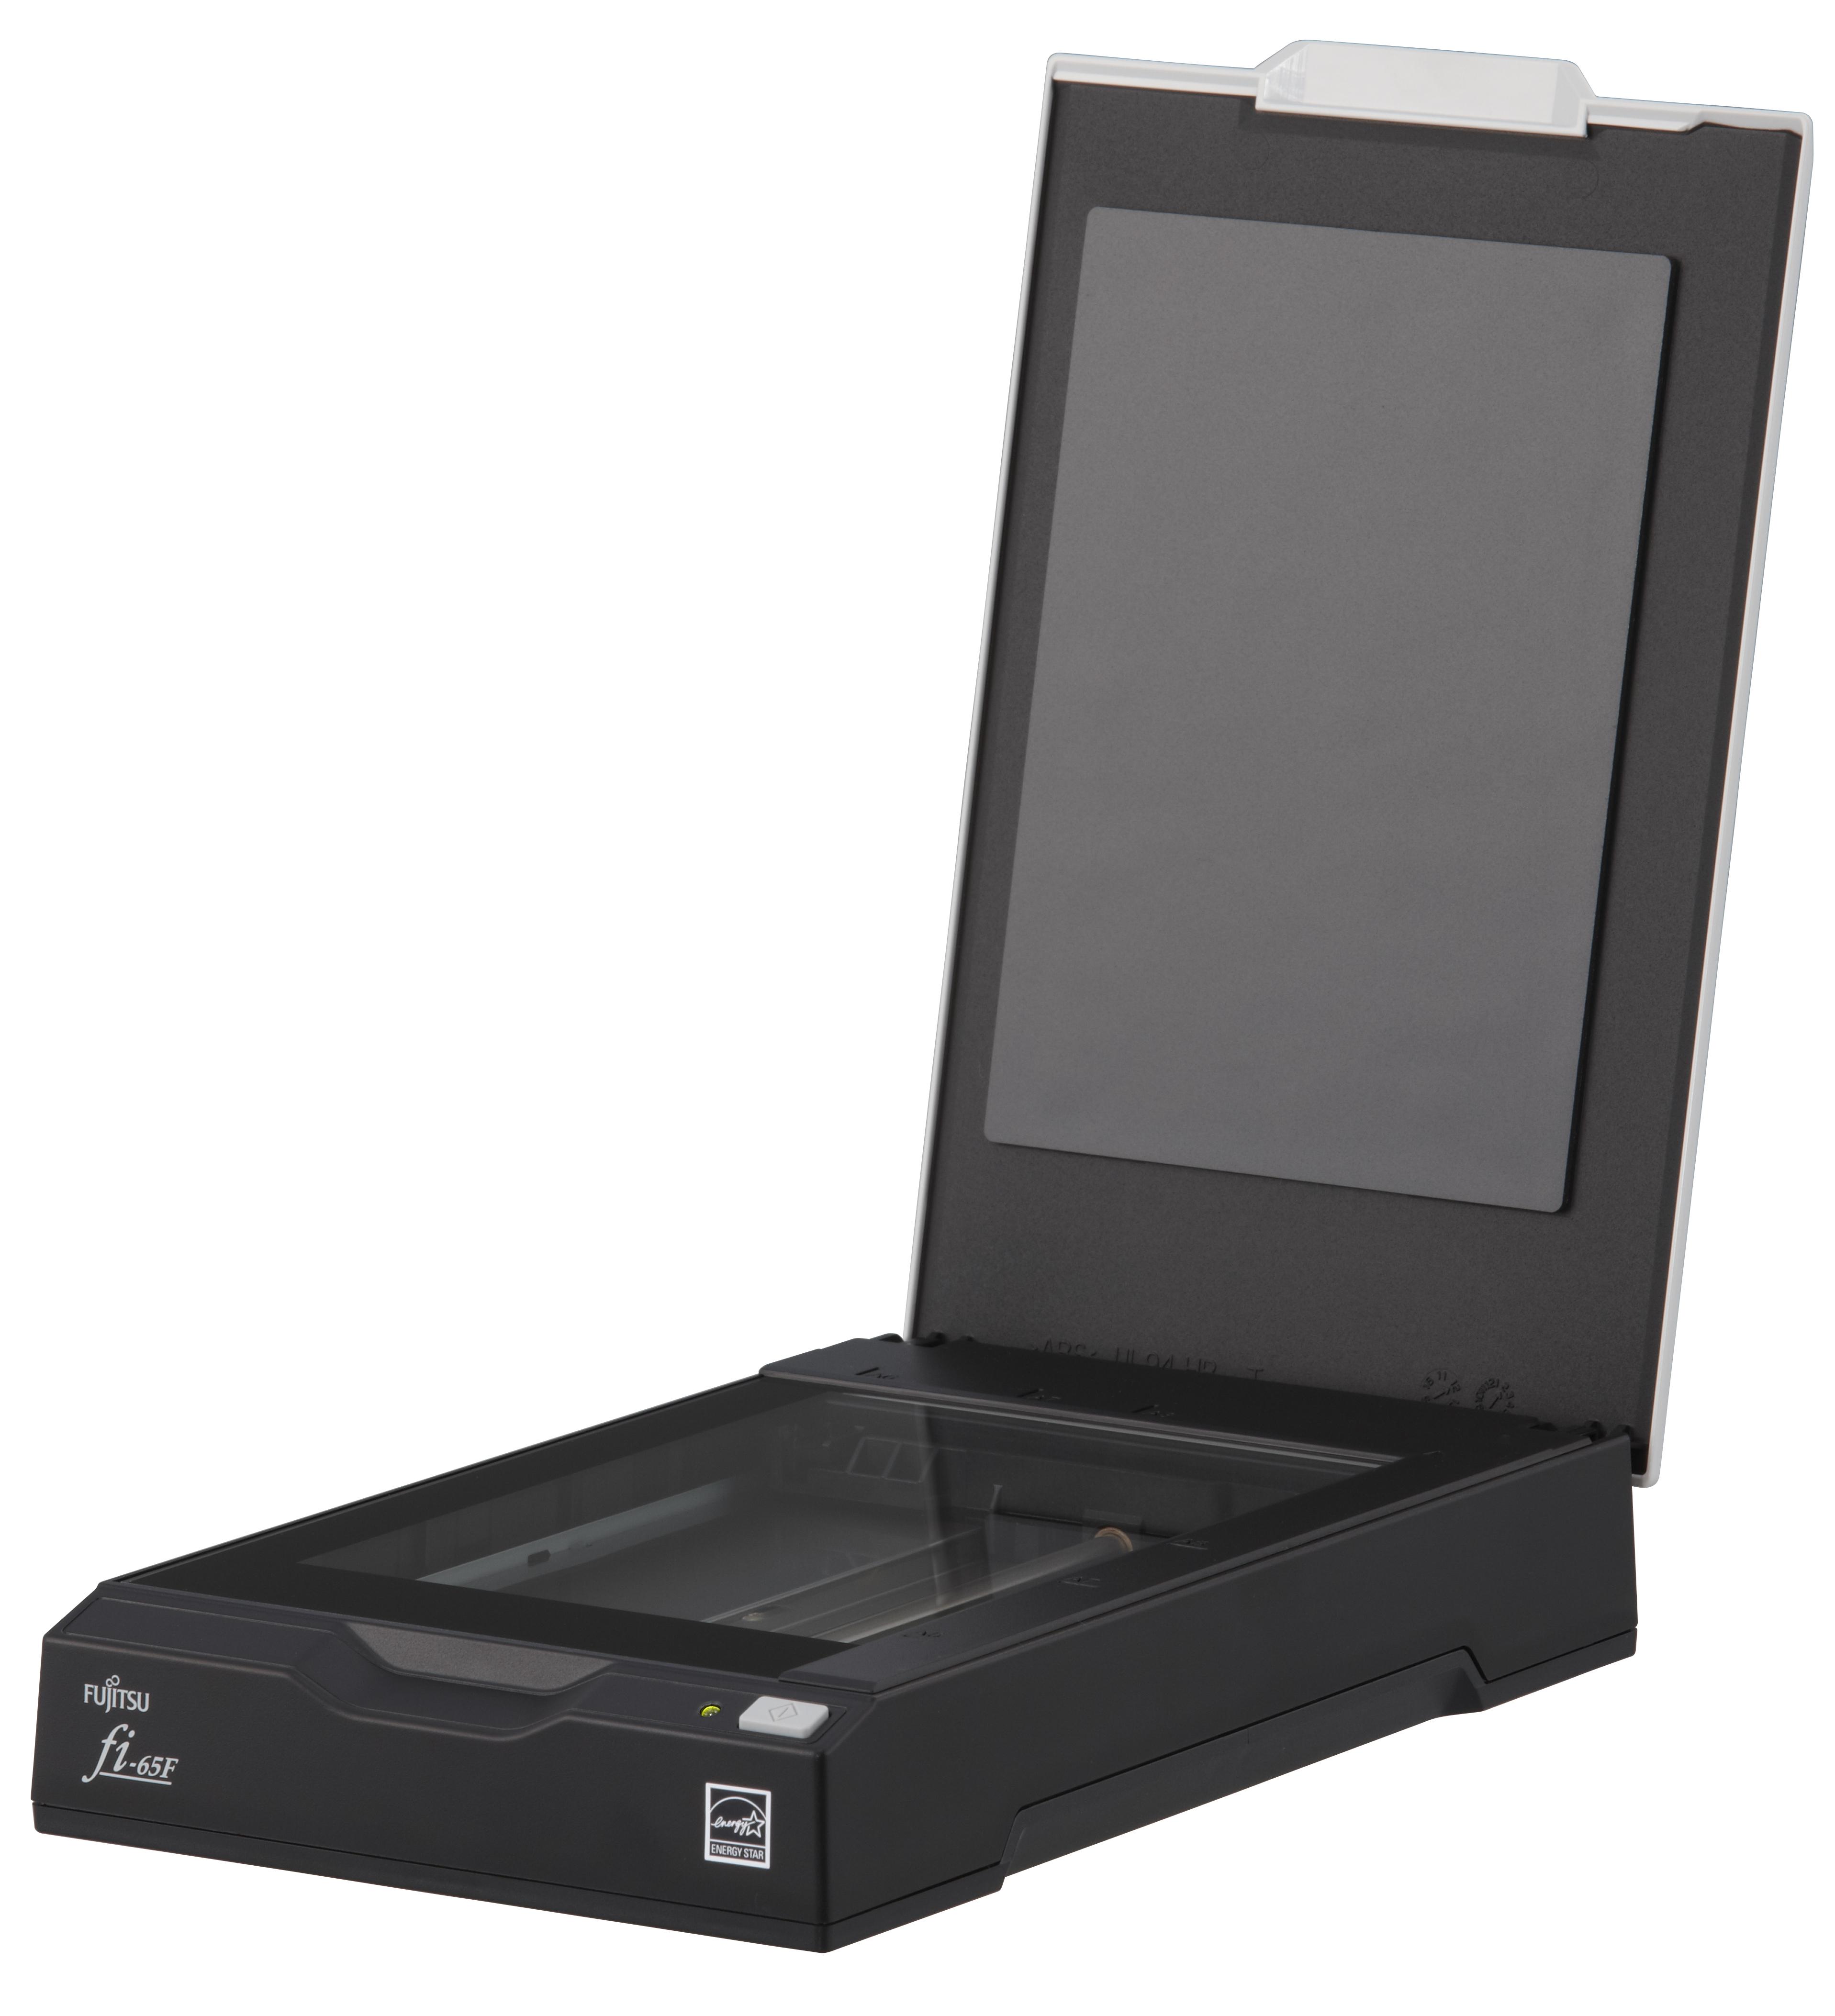 Dpi для сканирования документов. Сканер Fujitsu Fi-65f. Сканер Microtek xt6060. Сканер Microtek xt6060 (6006). Планшетный сканер Fujitsu Fi-65f pa03595-b001 (a6, цветной, CIS).